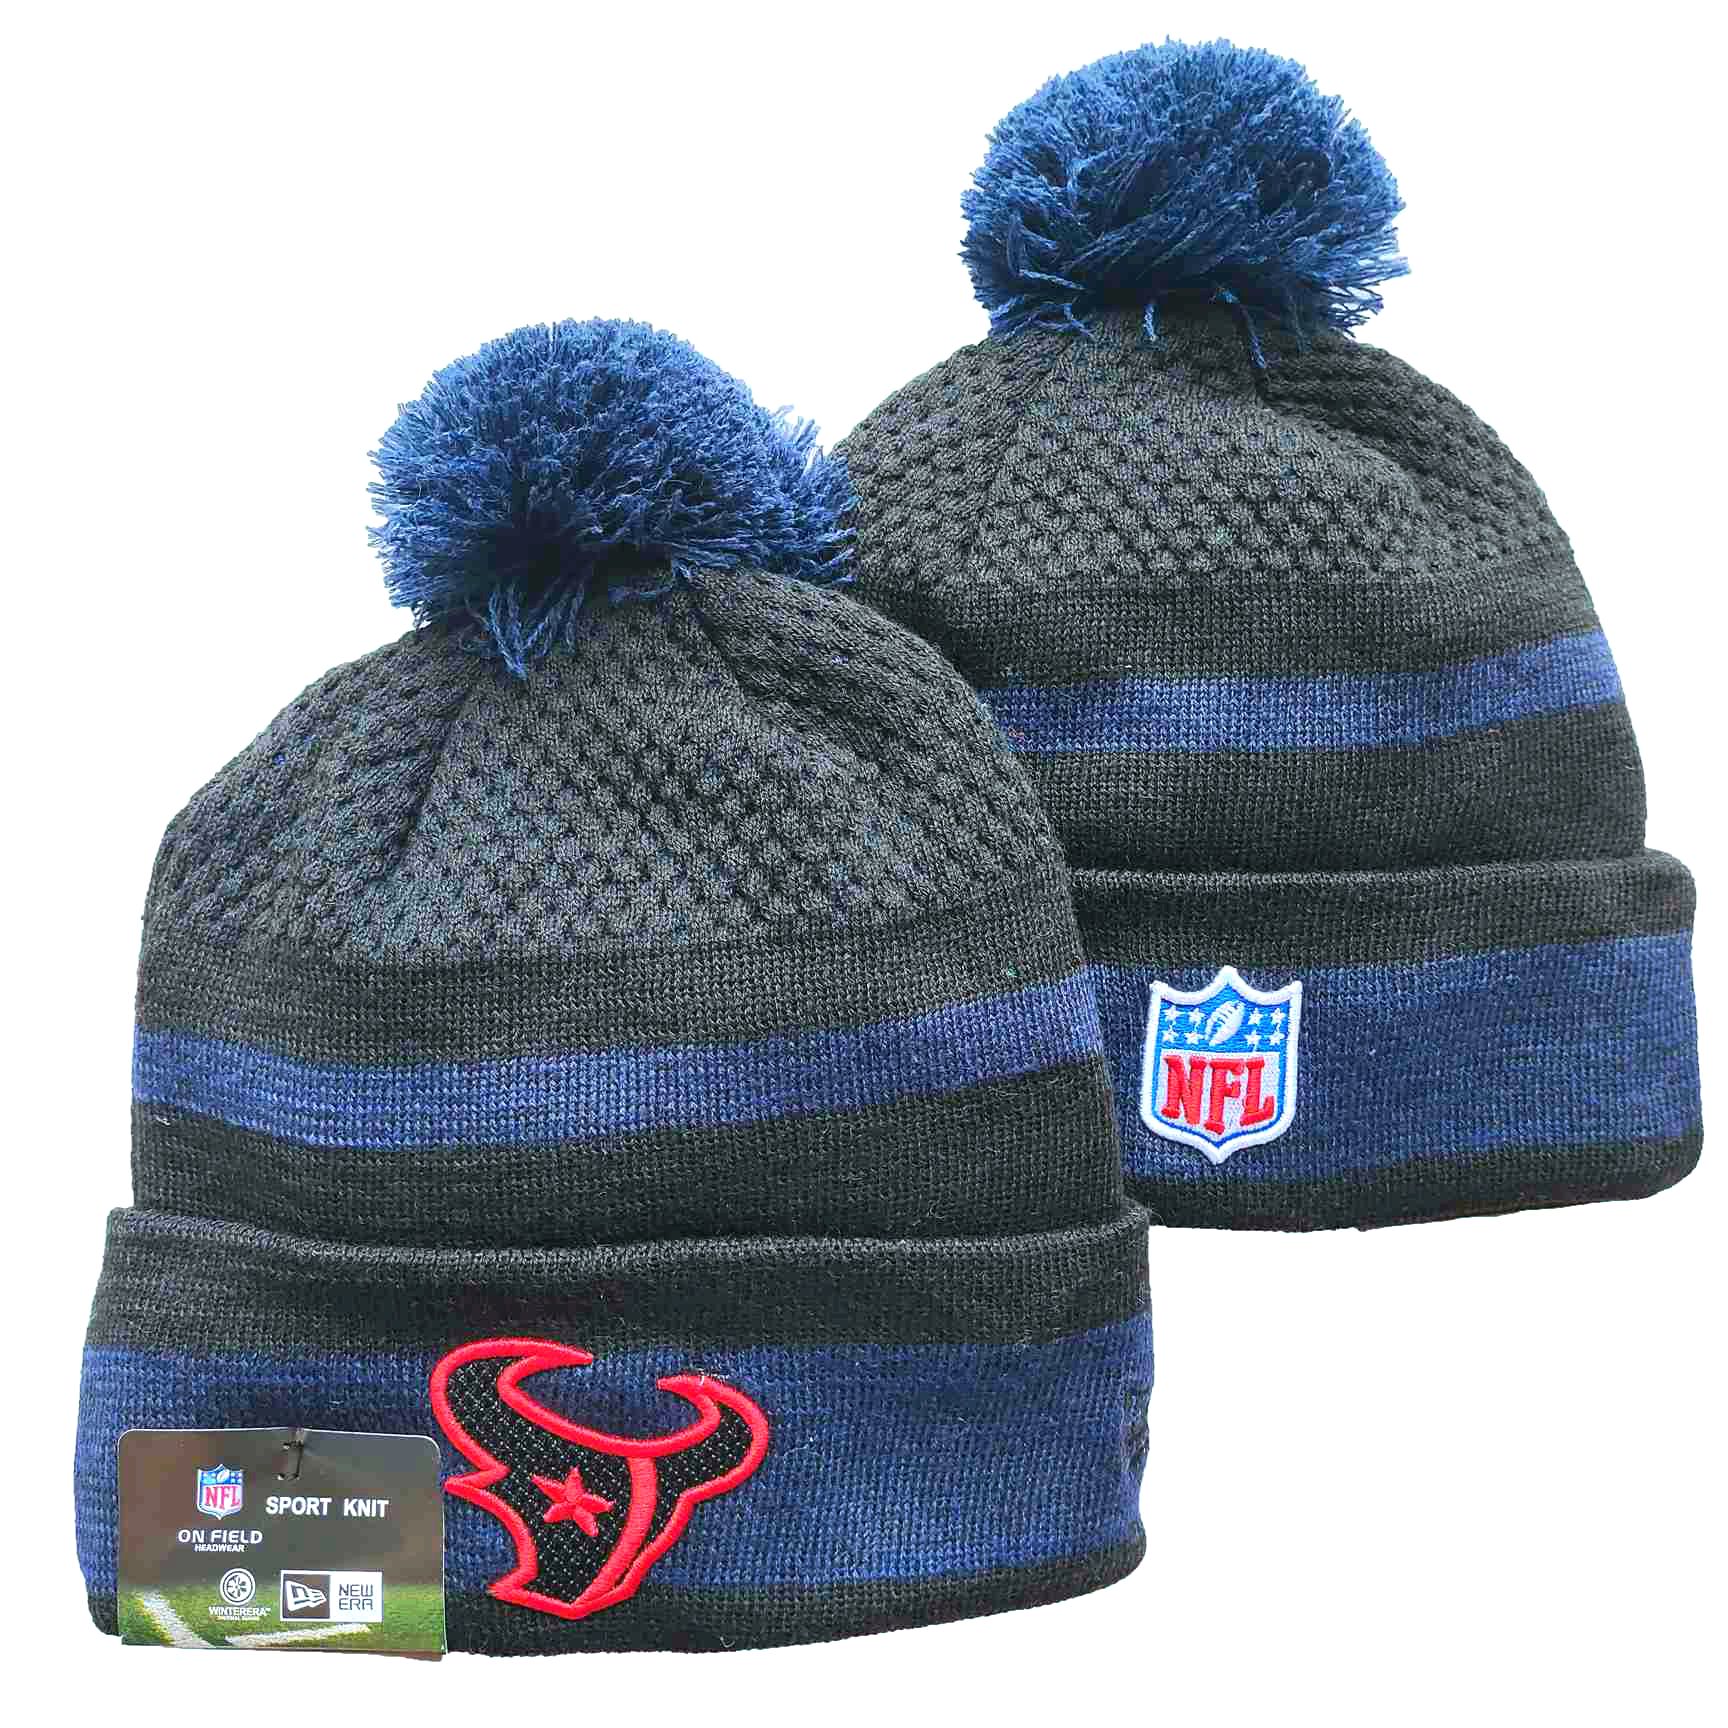 NFL Houston Texans Beanies Knit Hats-YD1205